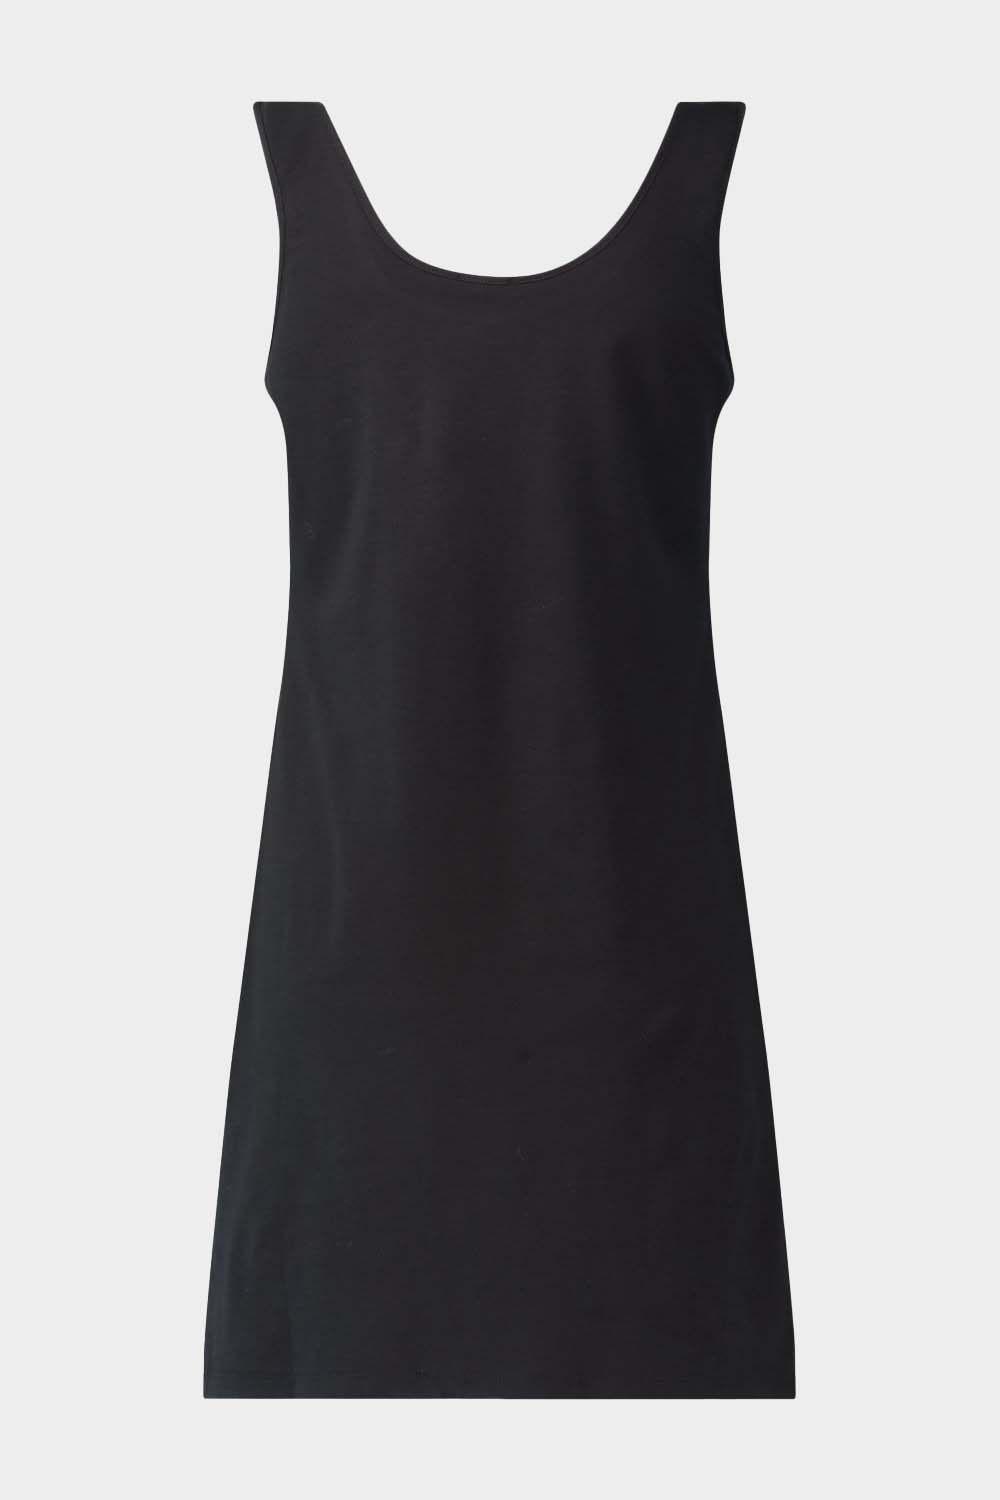 שמלה קצרה לנשים לוגו LIU JO Vendome online | ונדום .